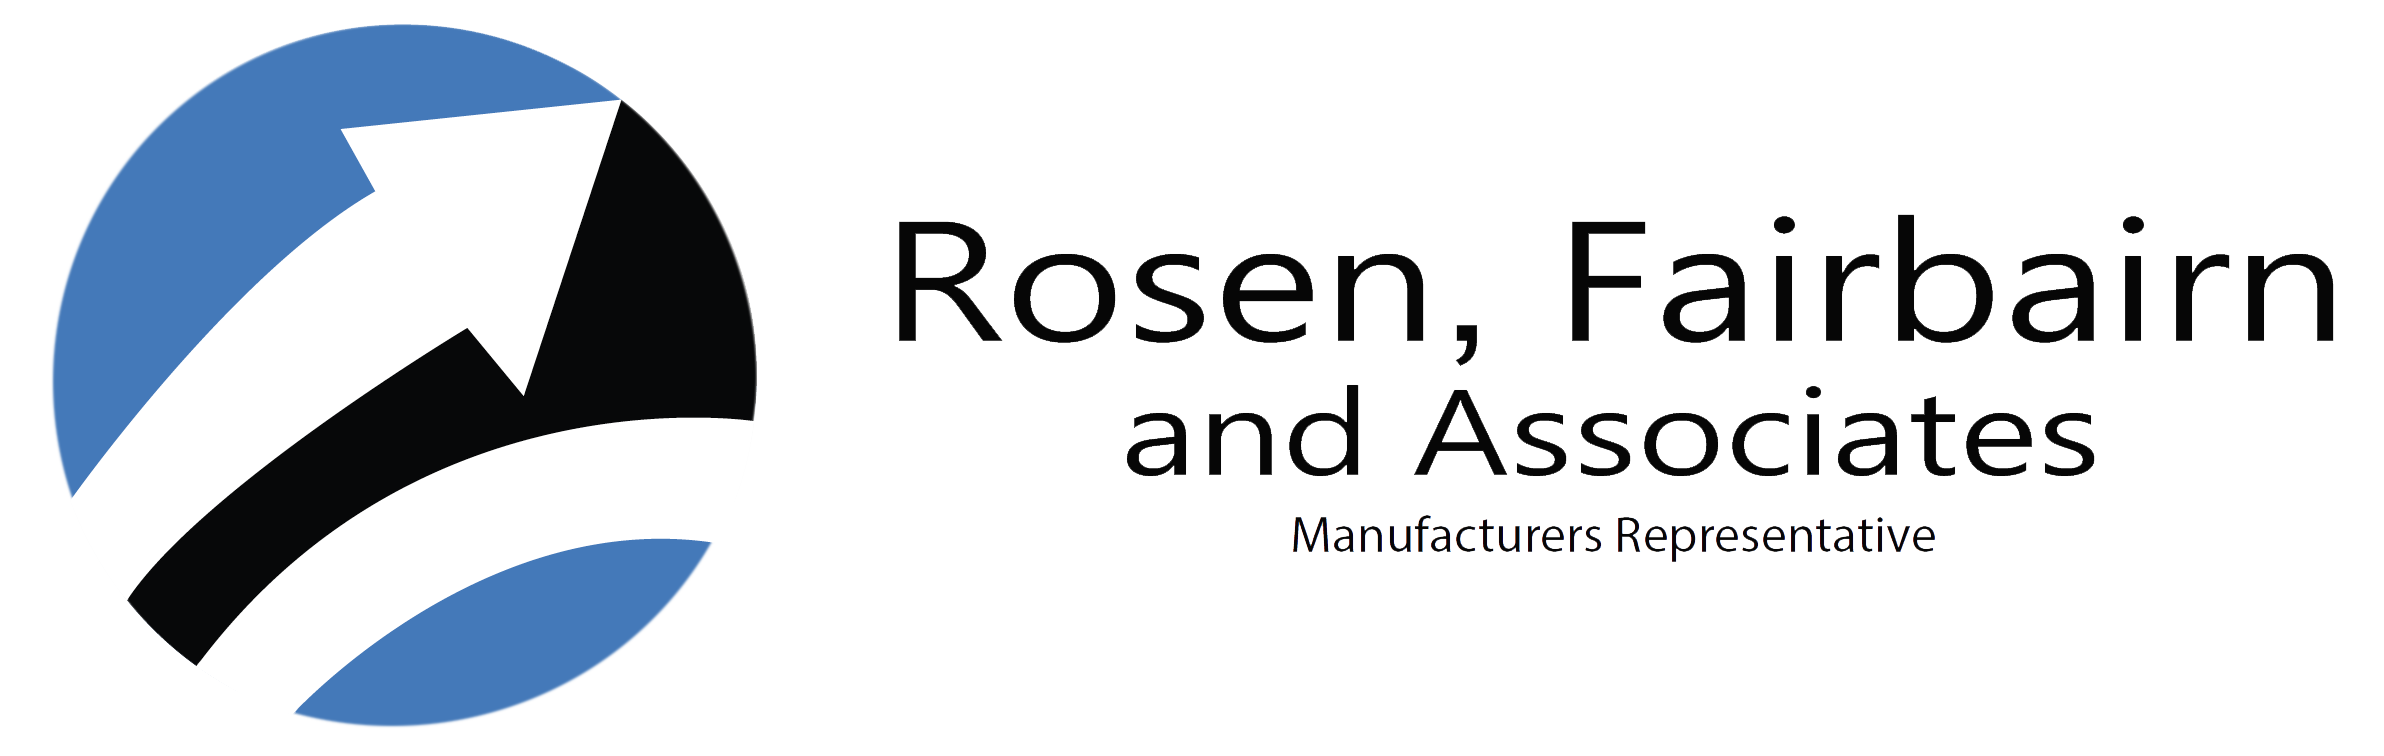 Rosen, Fairbairn, and Associates Logo